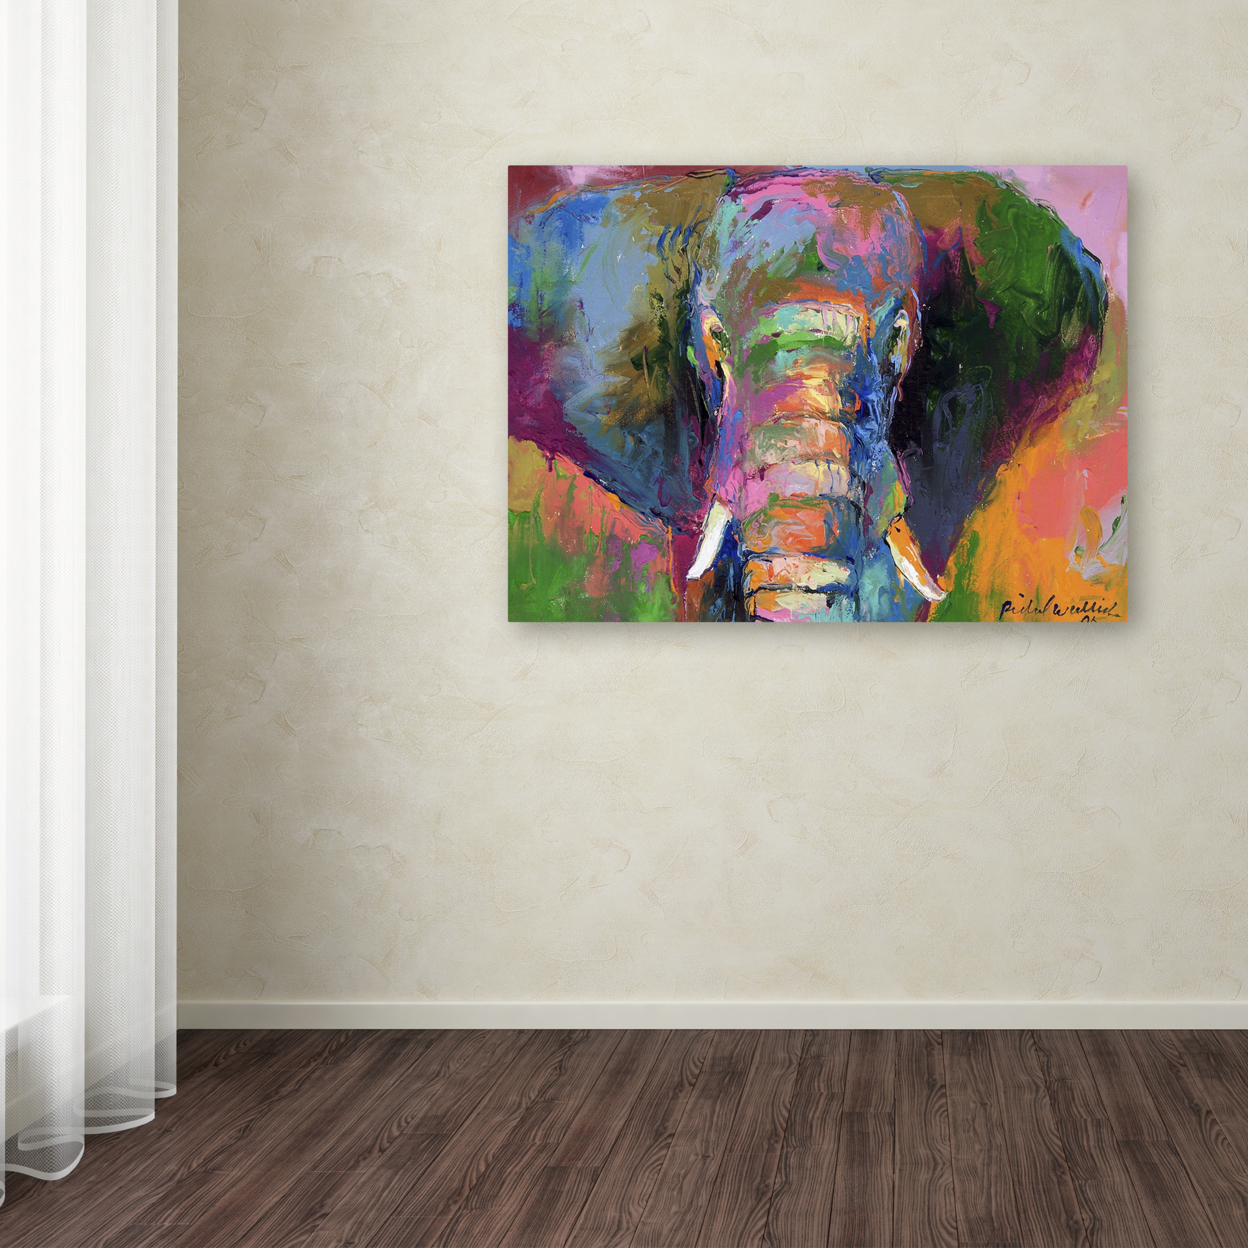 Richard Wallich 'Elephant 2' Canvas Wall Art 35 X 47 Inches